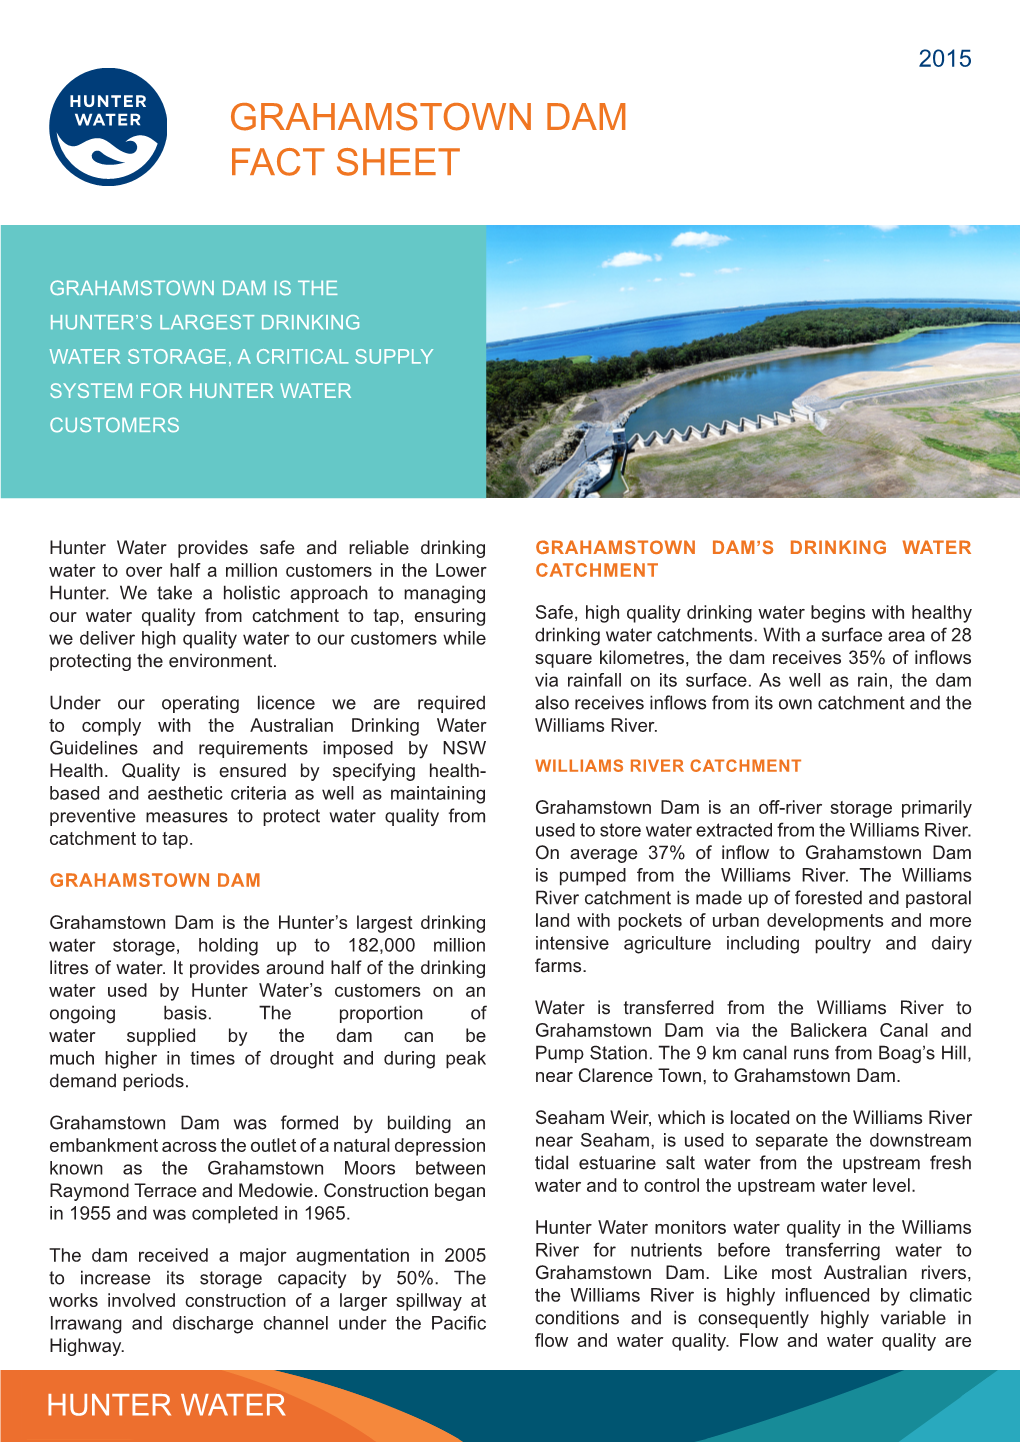 Grahamstown Dam Fact Sheet